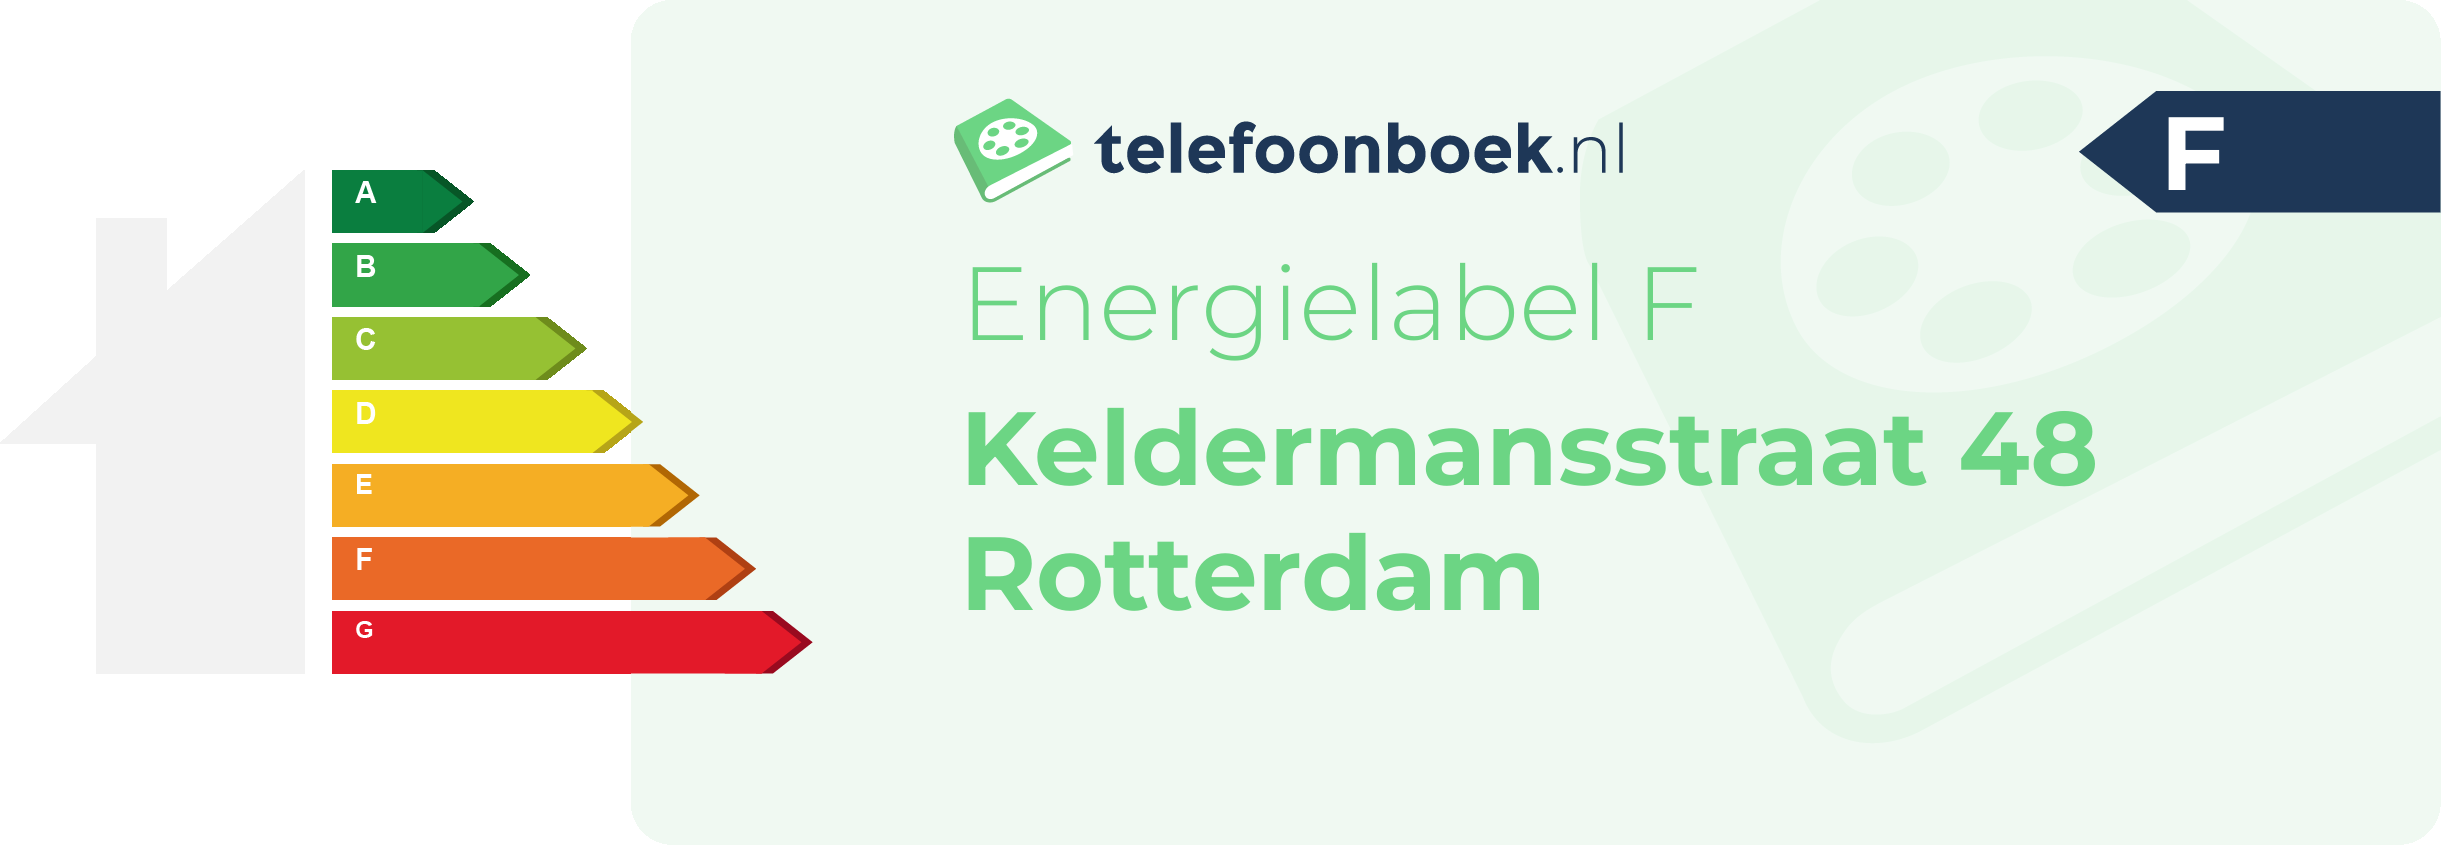 Energielabel Keldermansstraat 48 Rotterdam